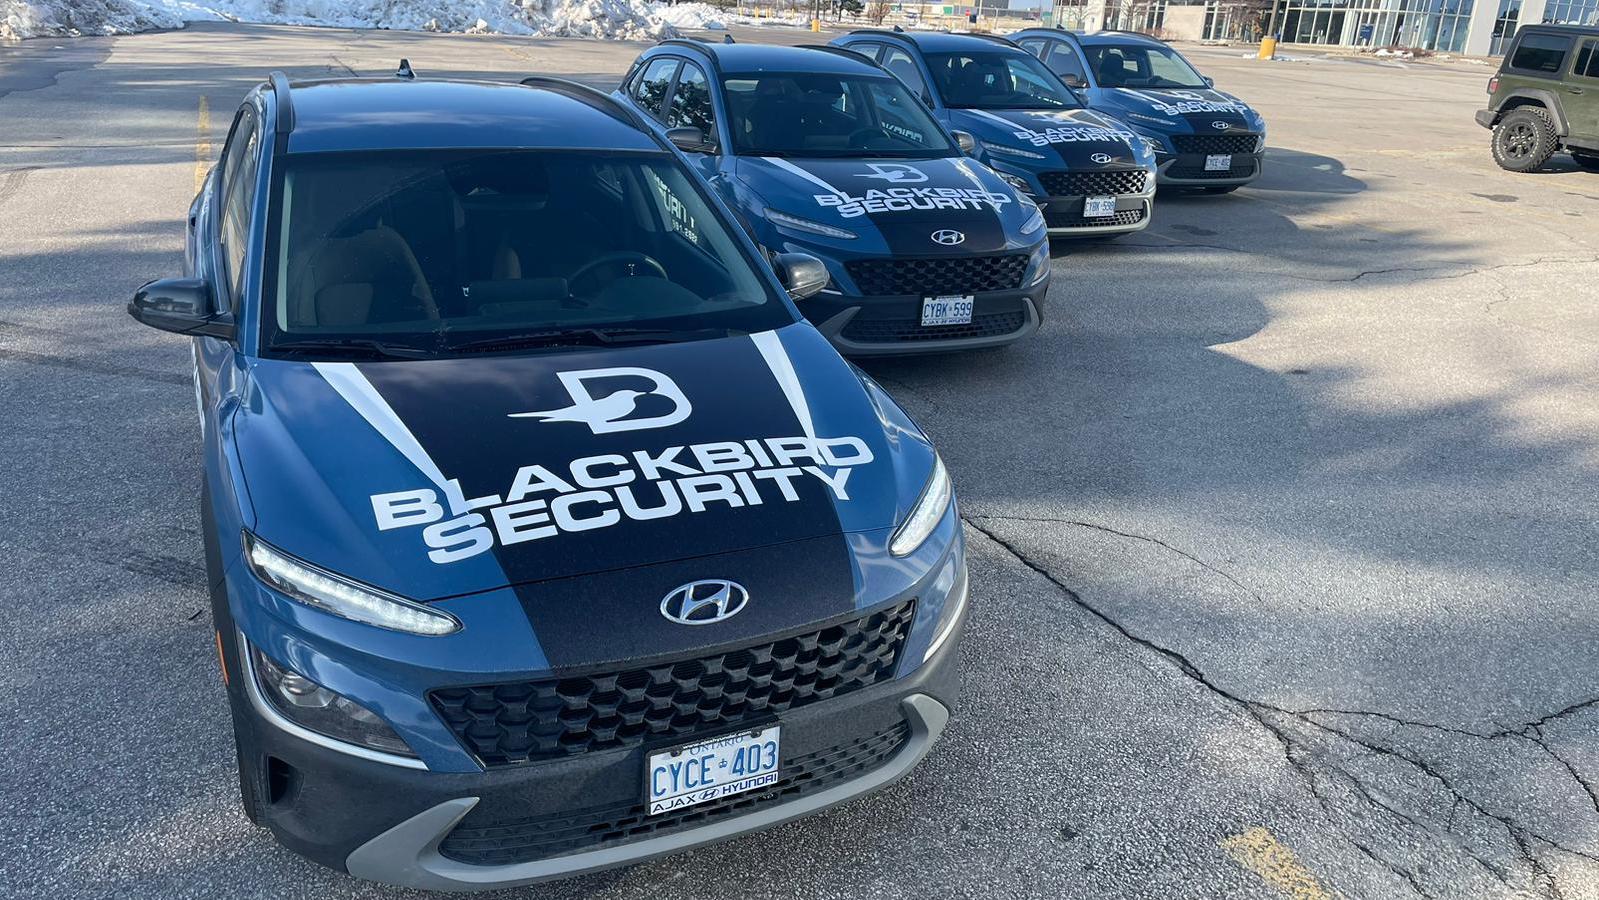 Fleet of Blackbird Security vehicles in a parking lot